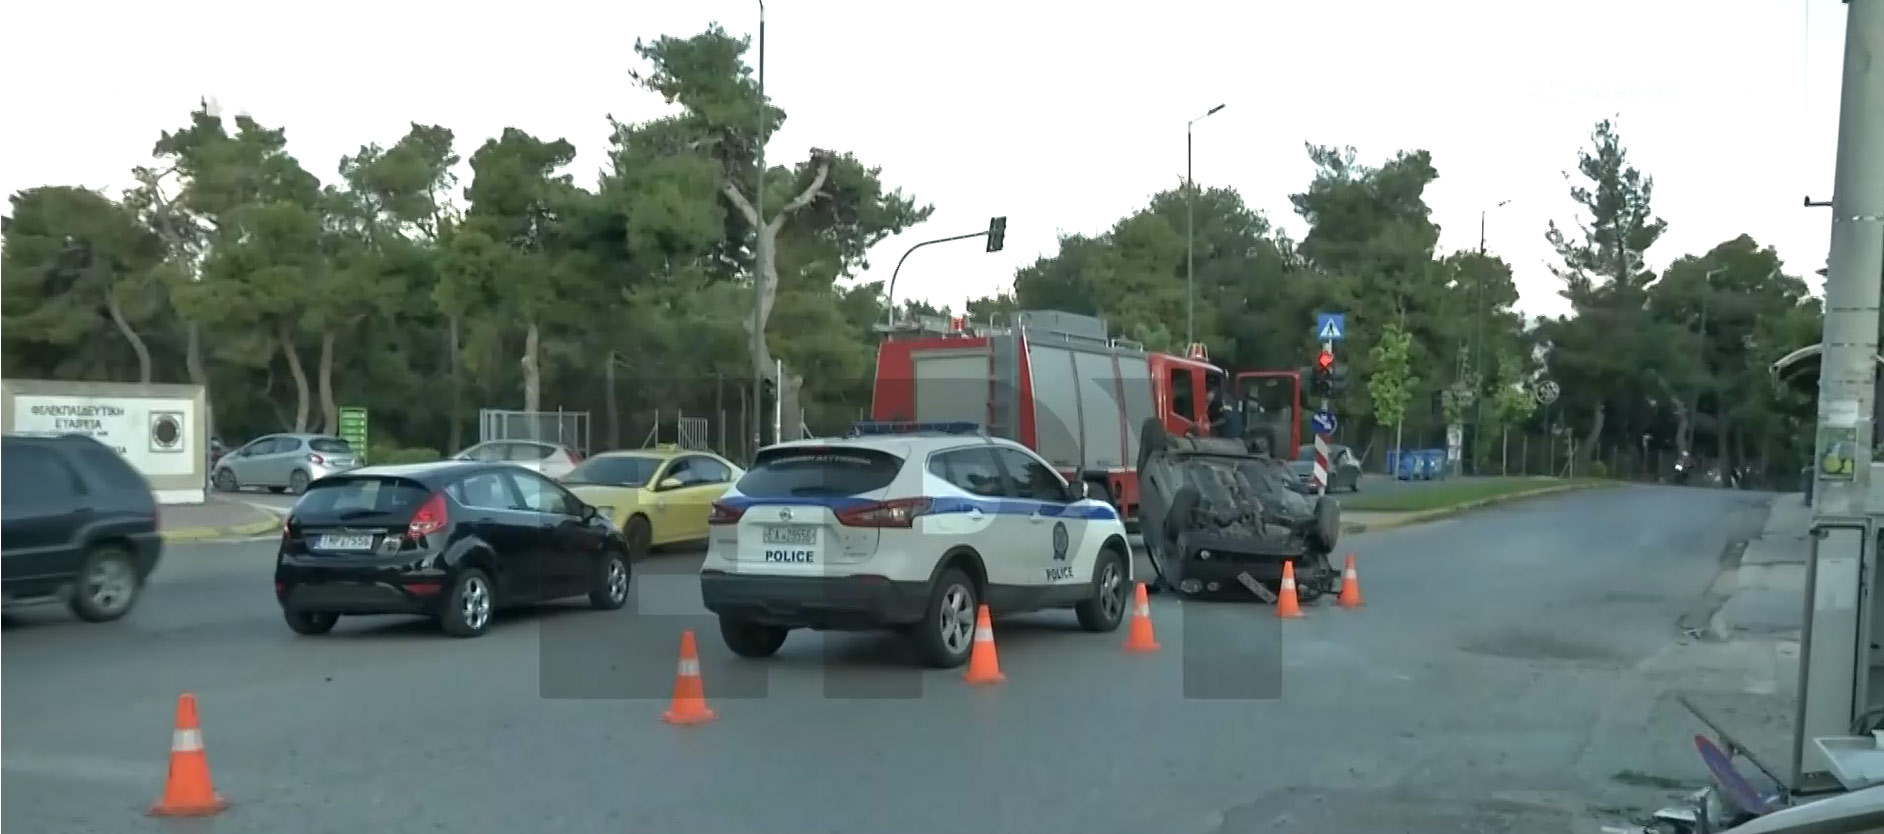 Άνοιξη Αττικής: Αυτοκίνητο αναποδογύρισε στη Λ. Μαραθώνος – Στο νοσοκομείο ο οδηγός